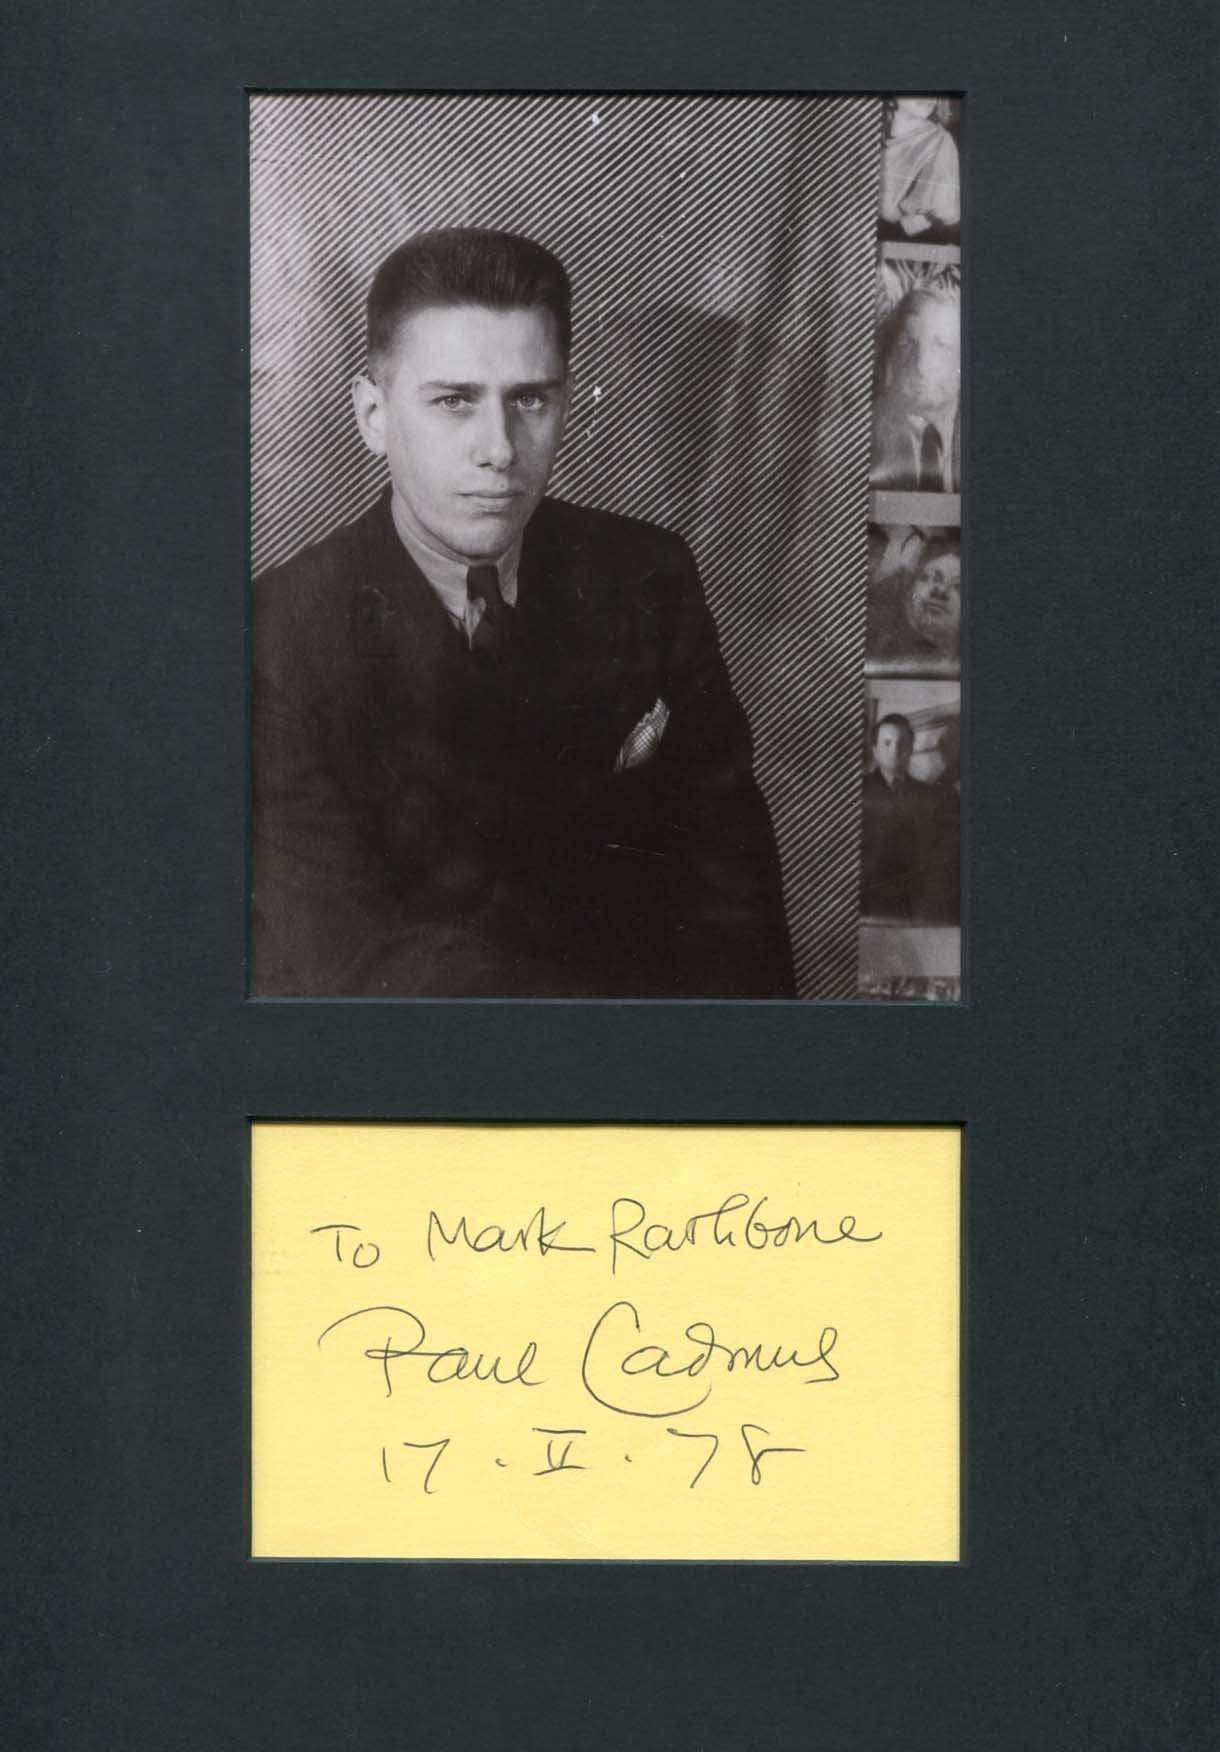 Cadmus, Paul autograph